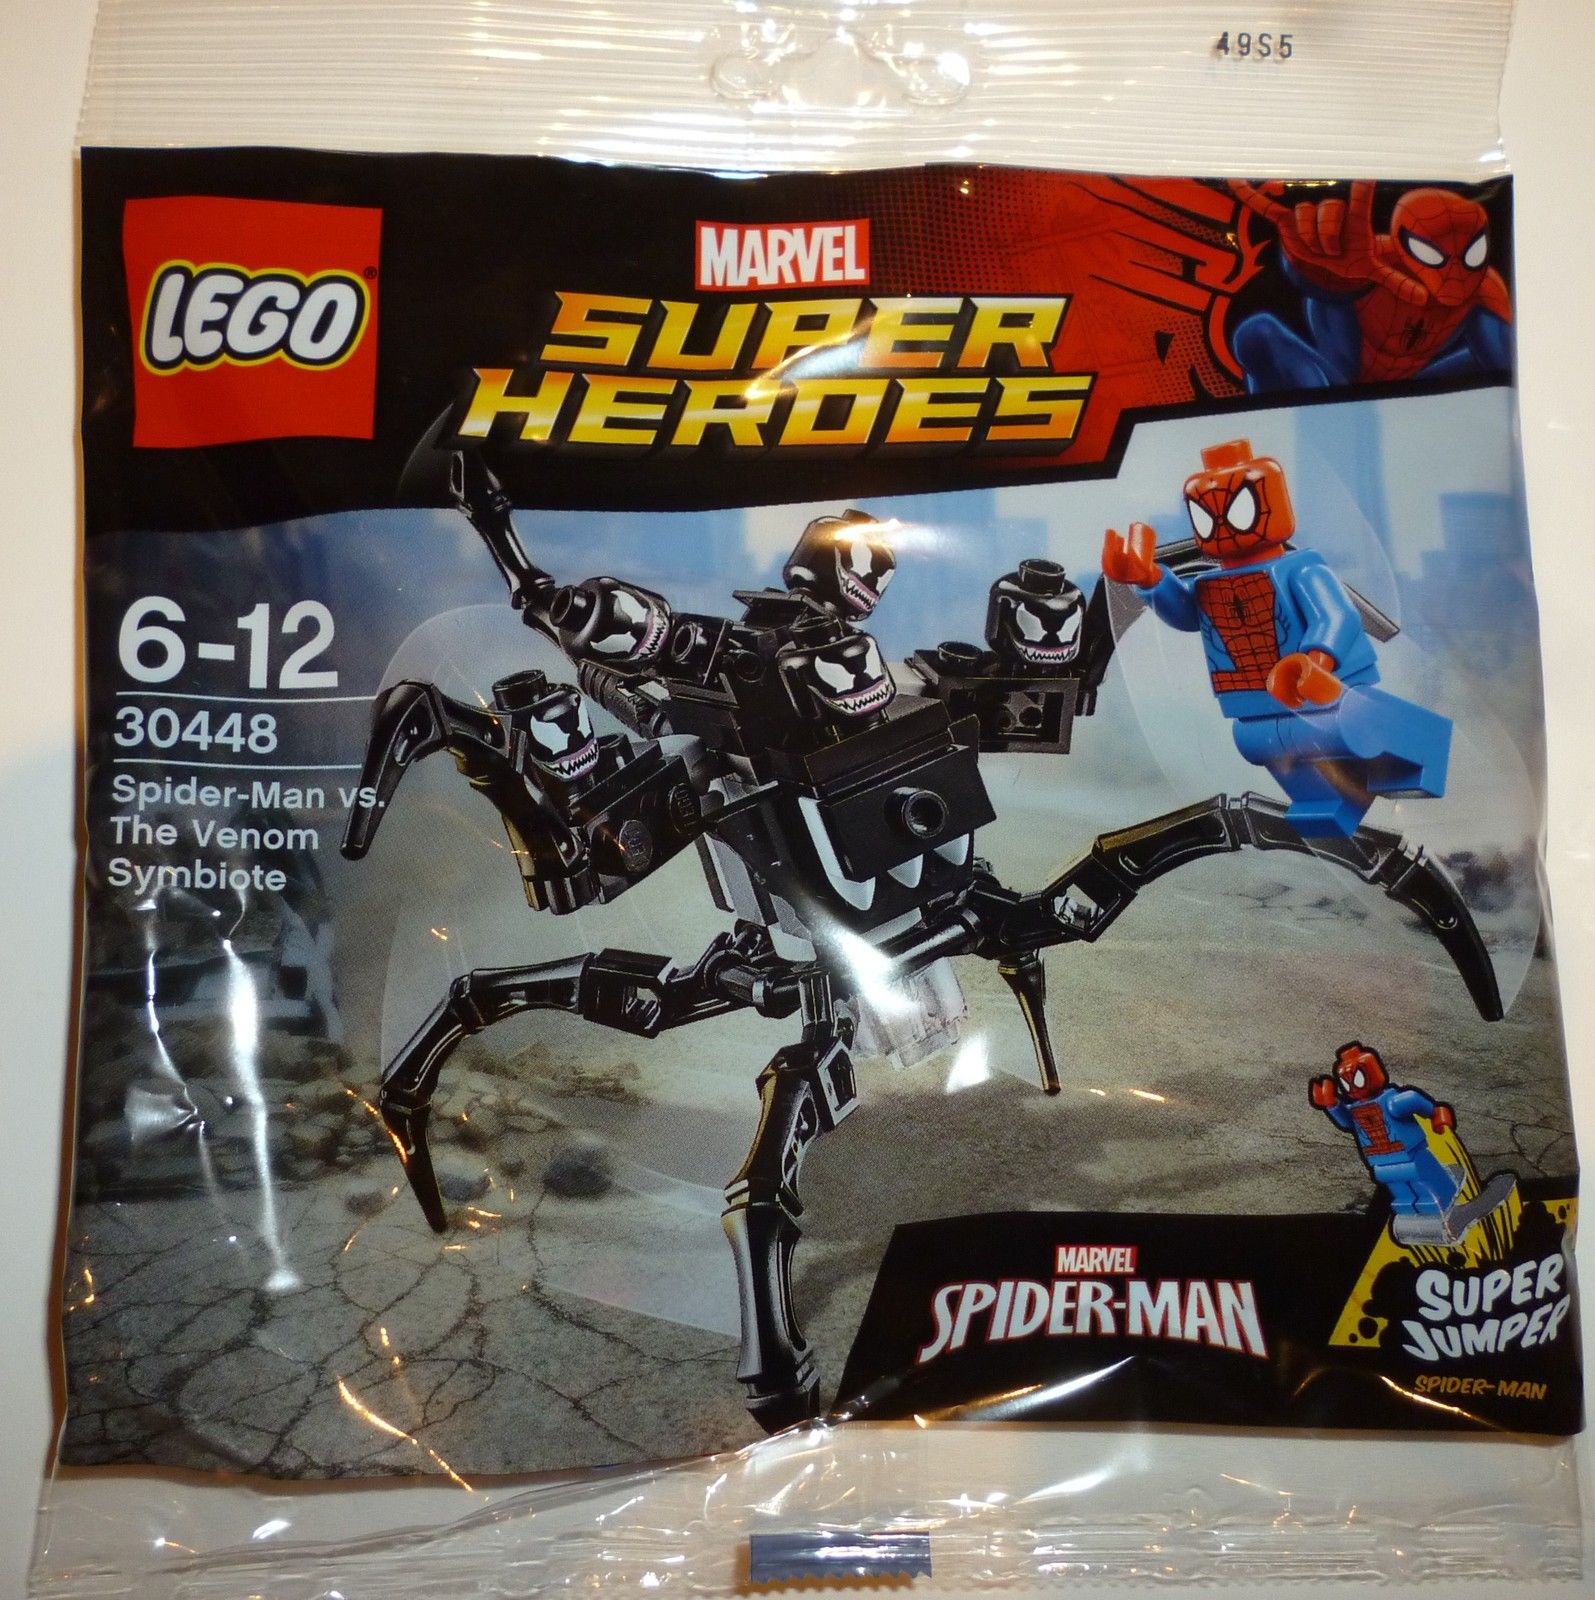 Construction Toy by LEGO 30448 vs. The Venom Symbiote